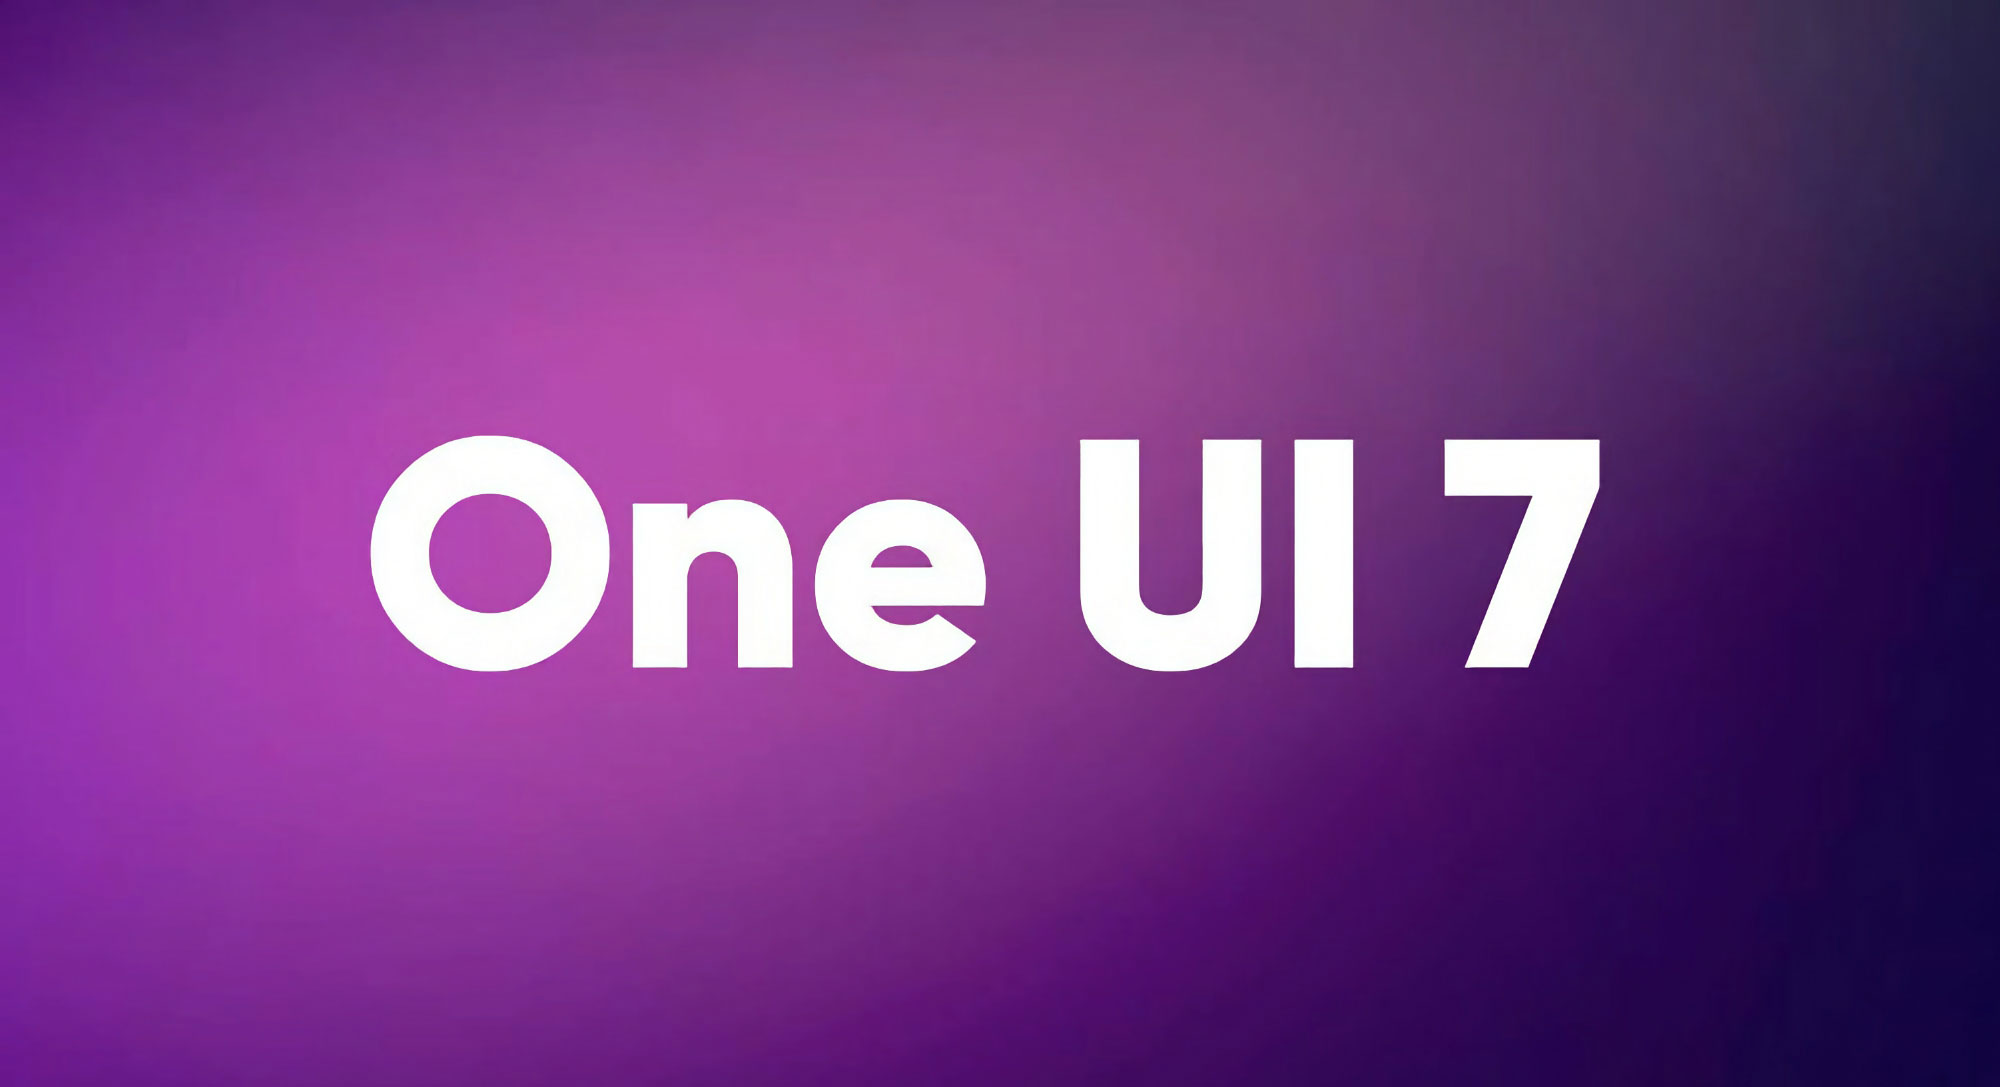 آپدیت One UI 7